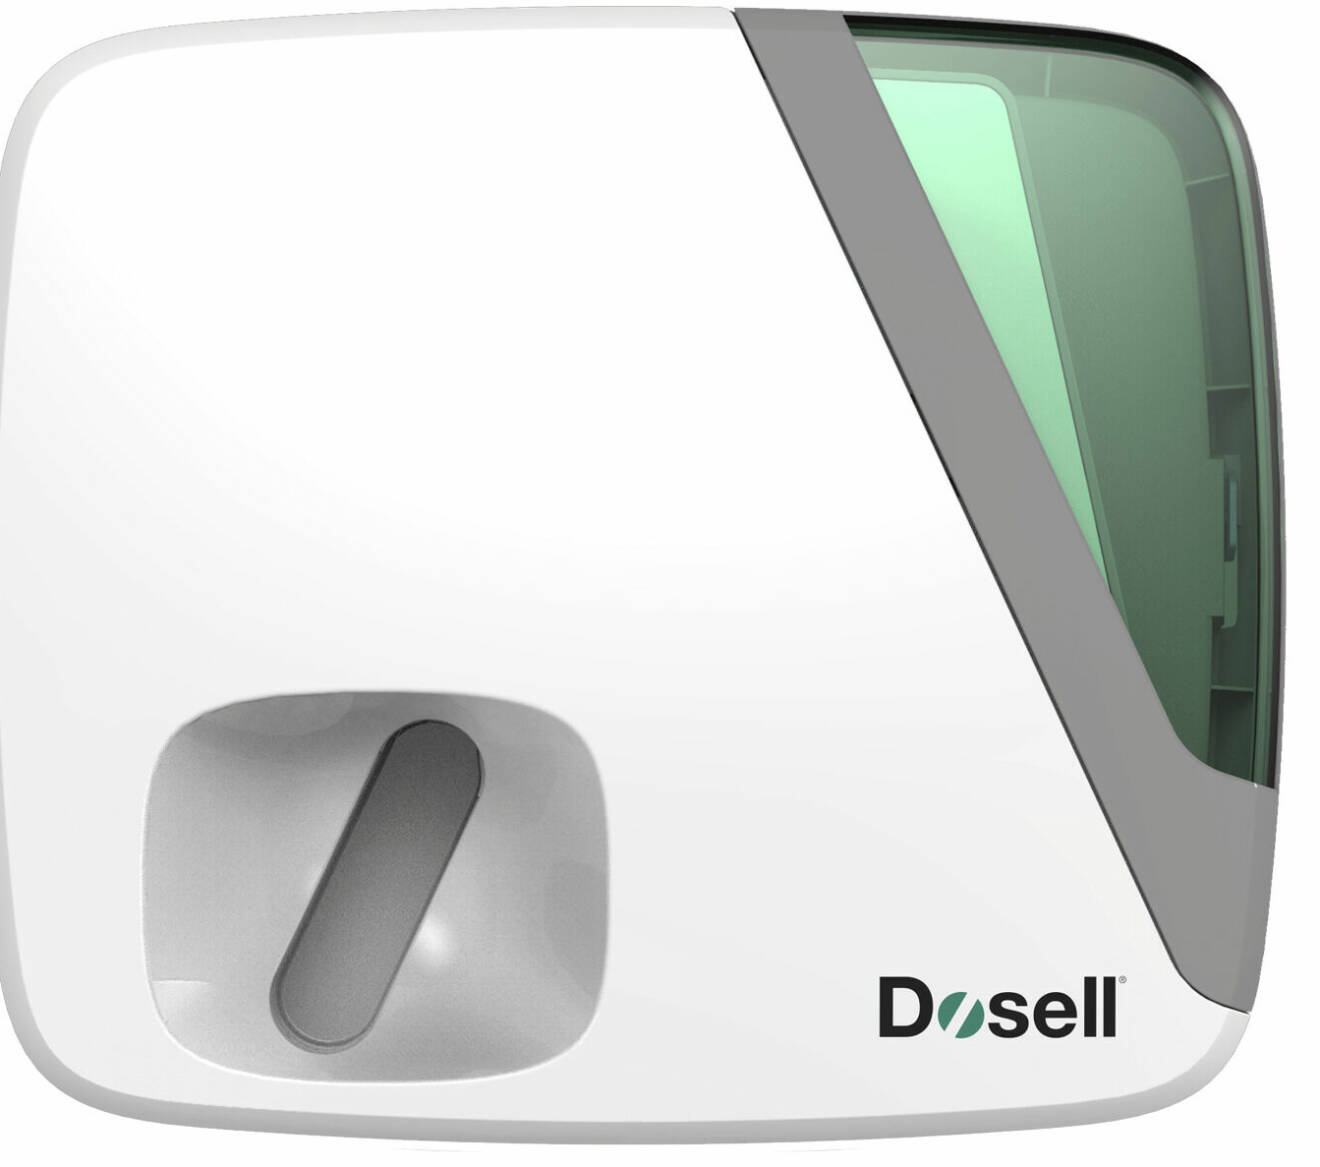 En läkemedelsrobot från Dosell